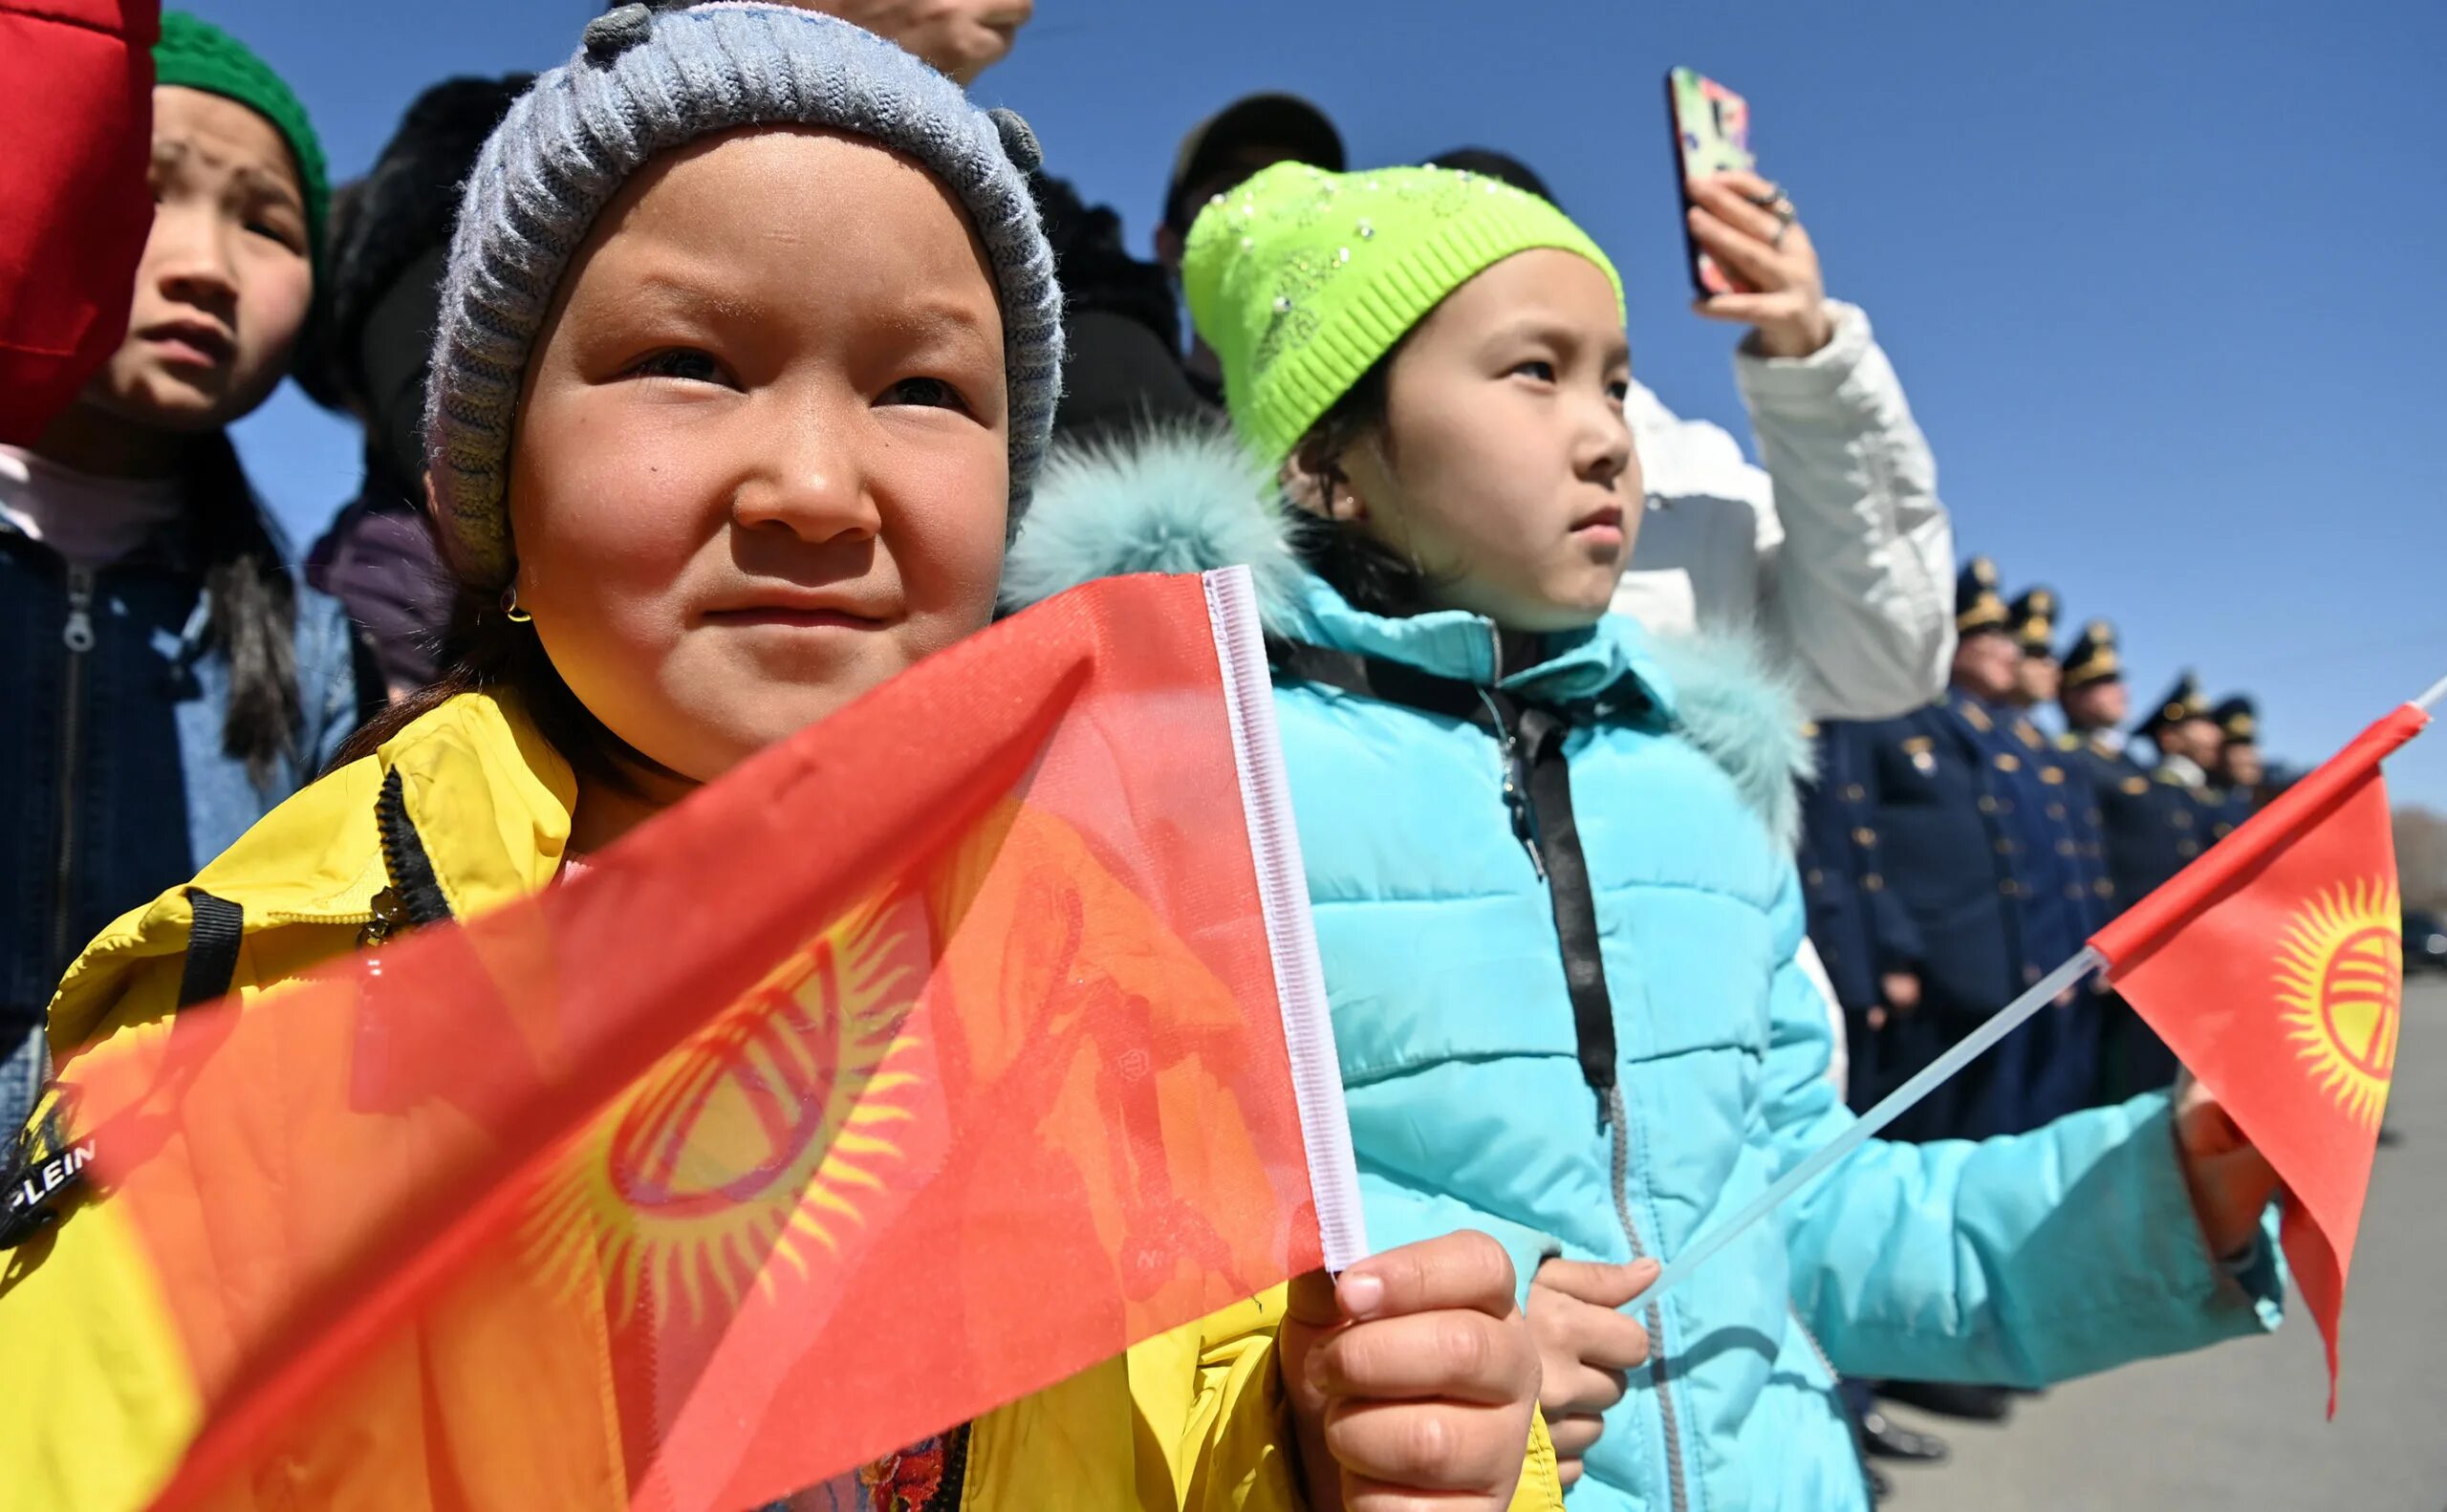 Обретение независимости Республики Кыргызстан. Киргизия или Кыргызстан. Праздники Кыргызстана. Кыргызстан после обретения независимости.